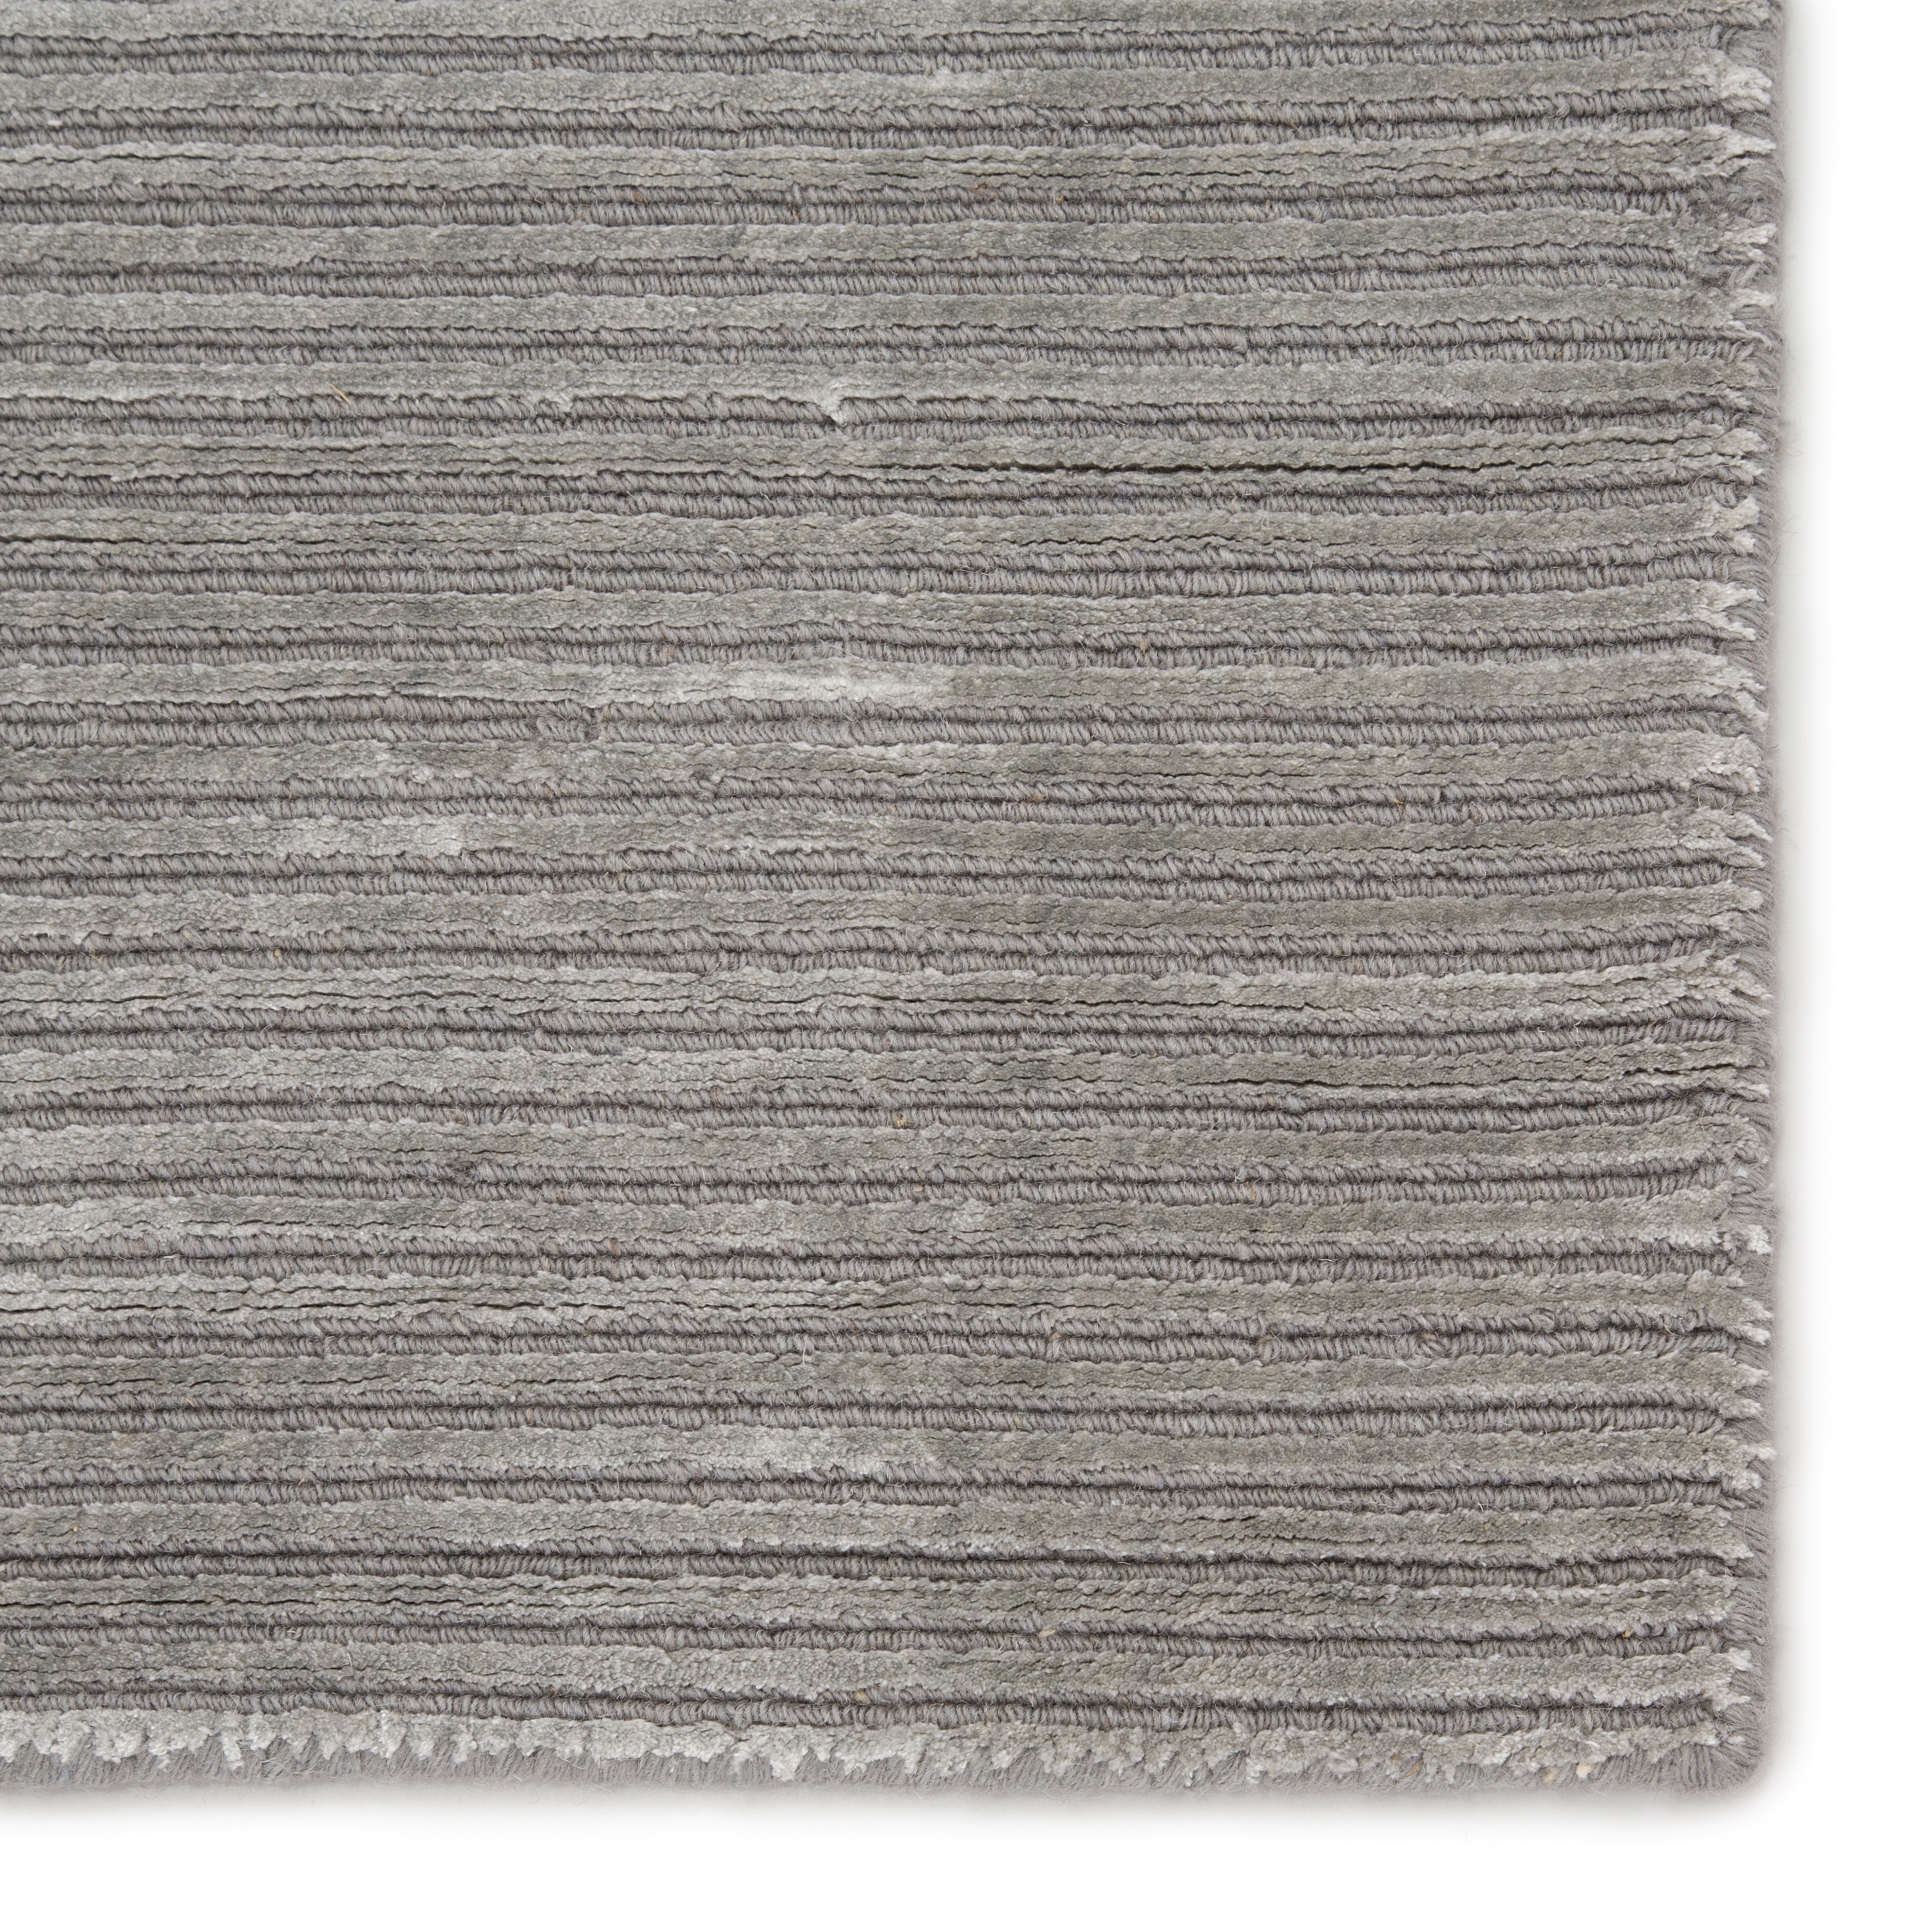 Basis Handmade Solid Gray/ Silver Area Rug (3'6" X 5'6") - Image 3